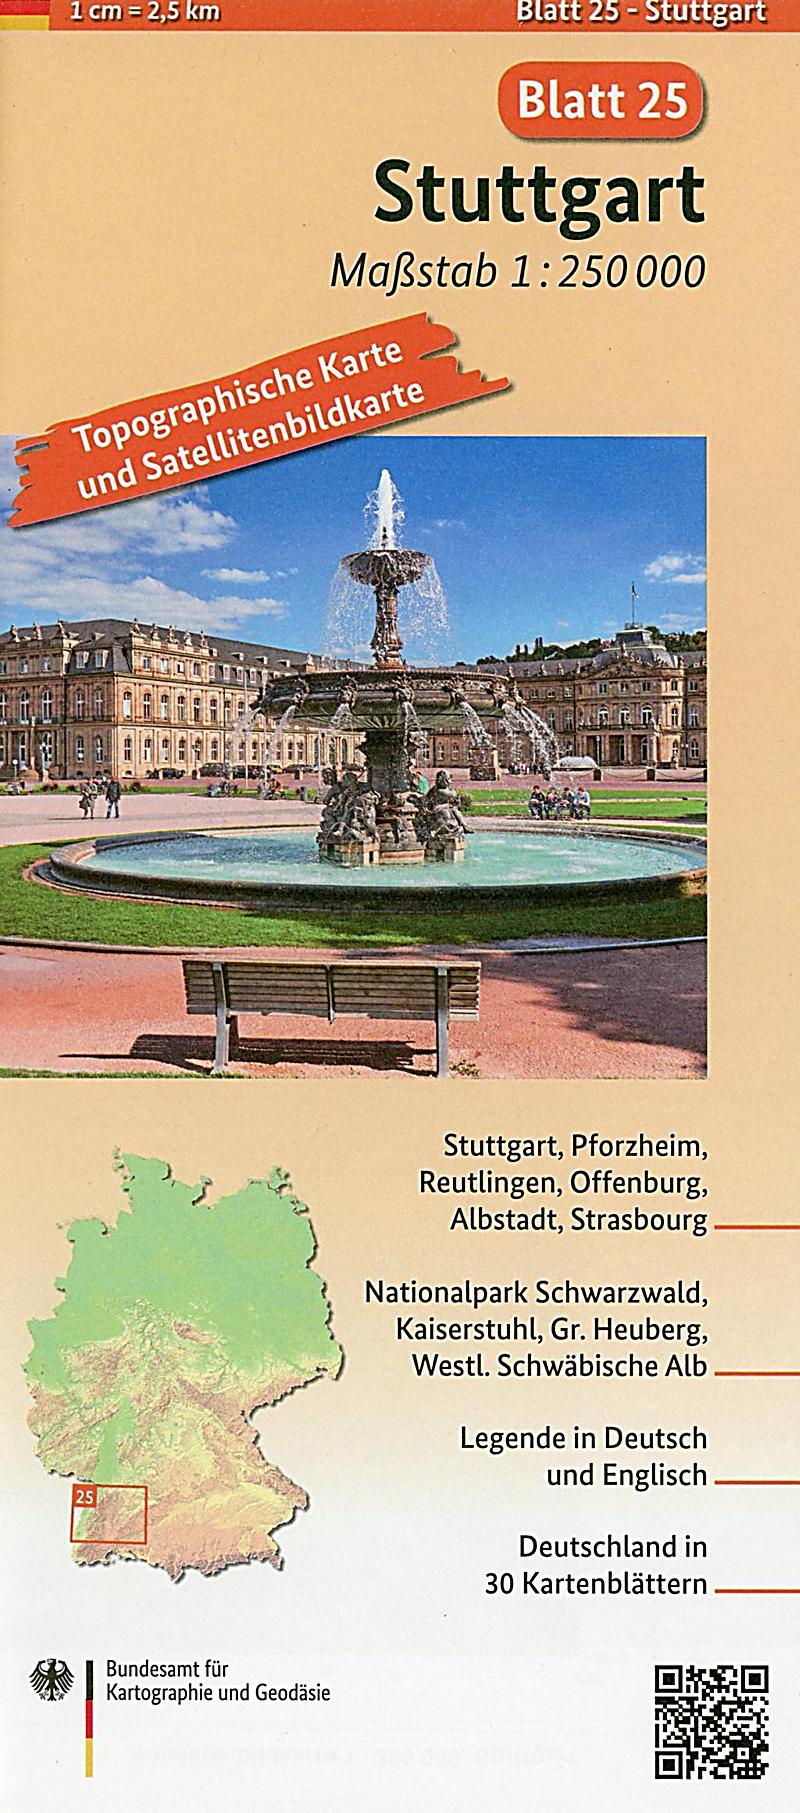 Topographische Karte und Satellitenbildkarte Stuttgart Buch